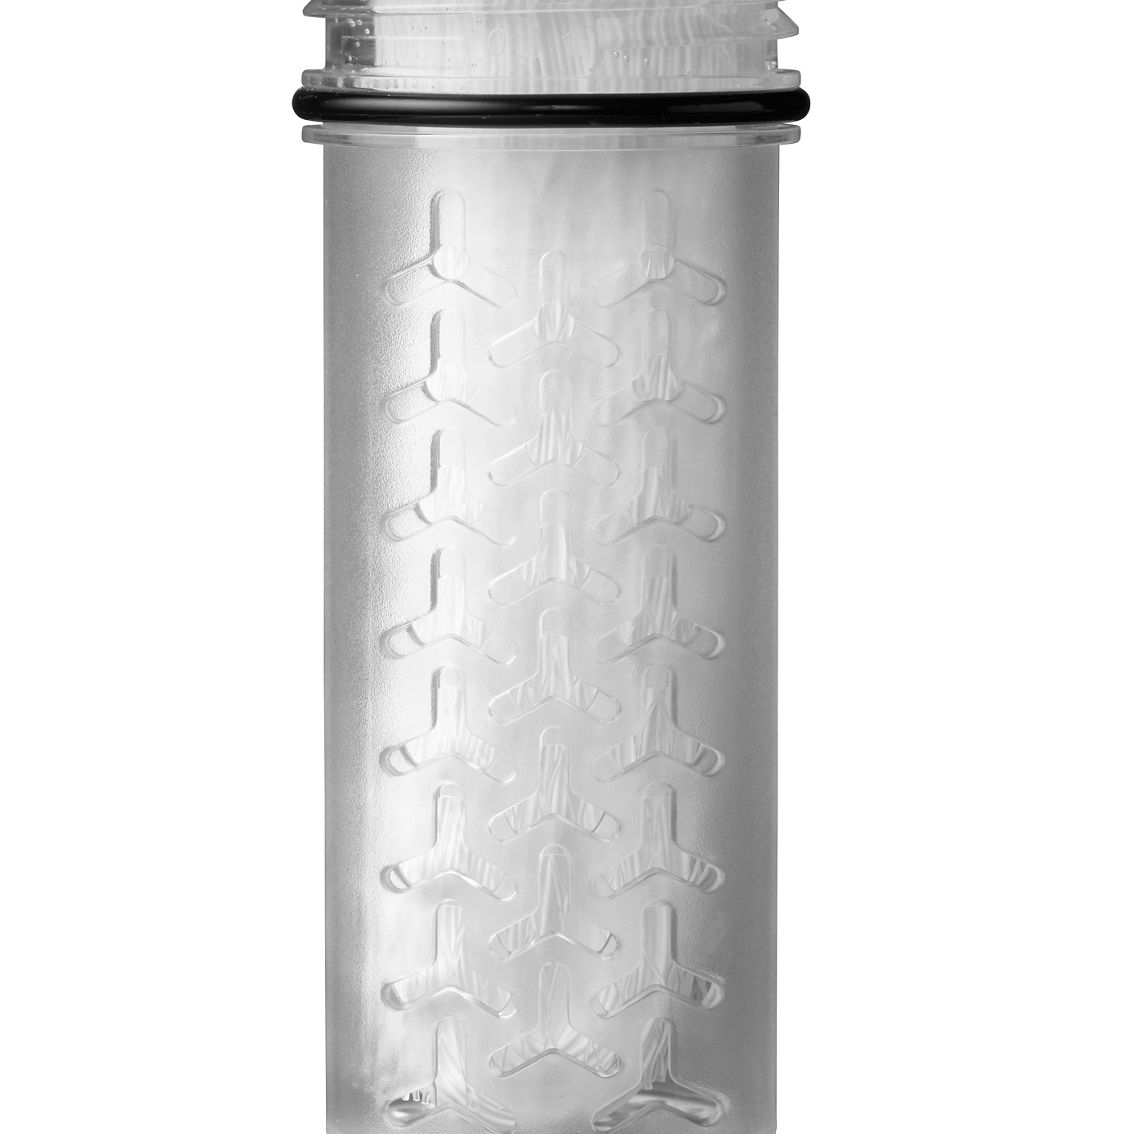 Camelbak LifeStraw Bottle Filter Set, Small - Image 2 of 2